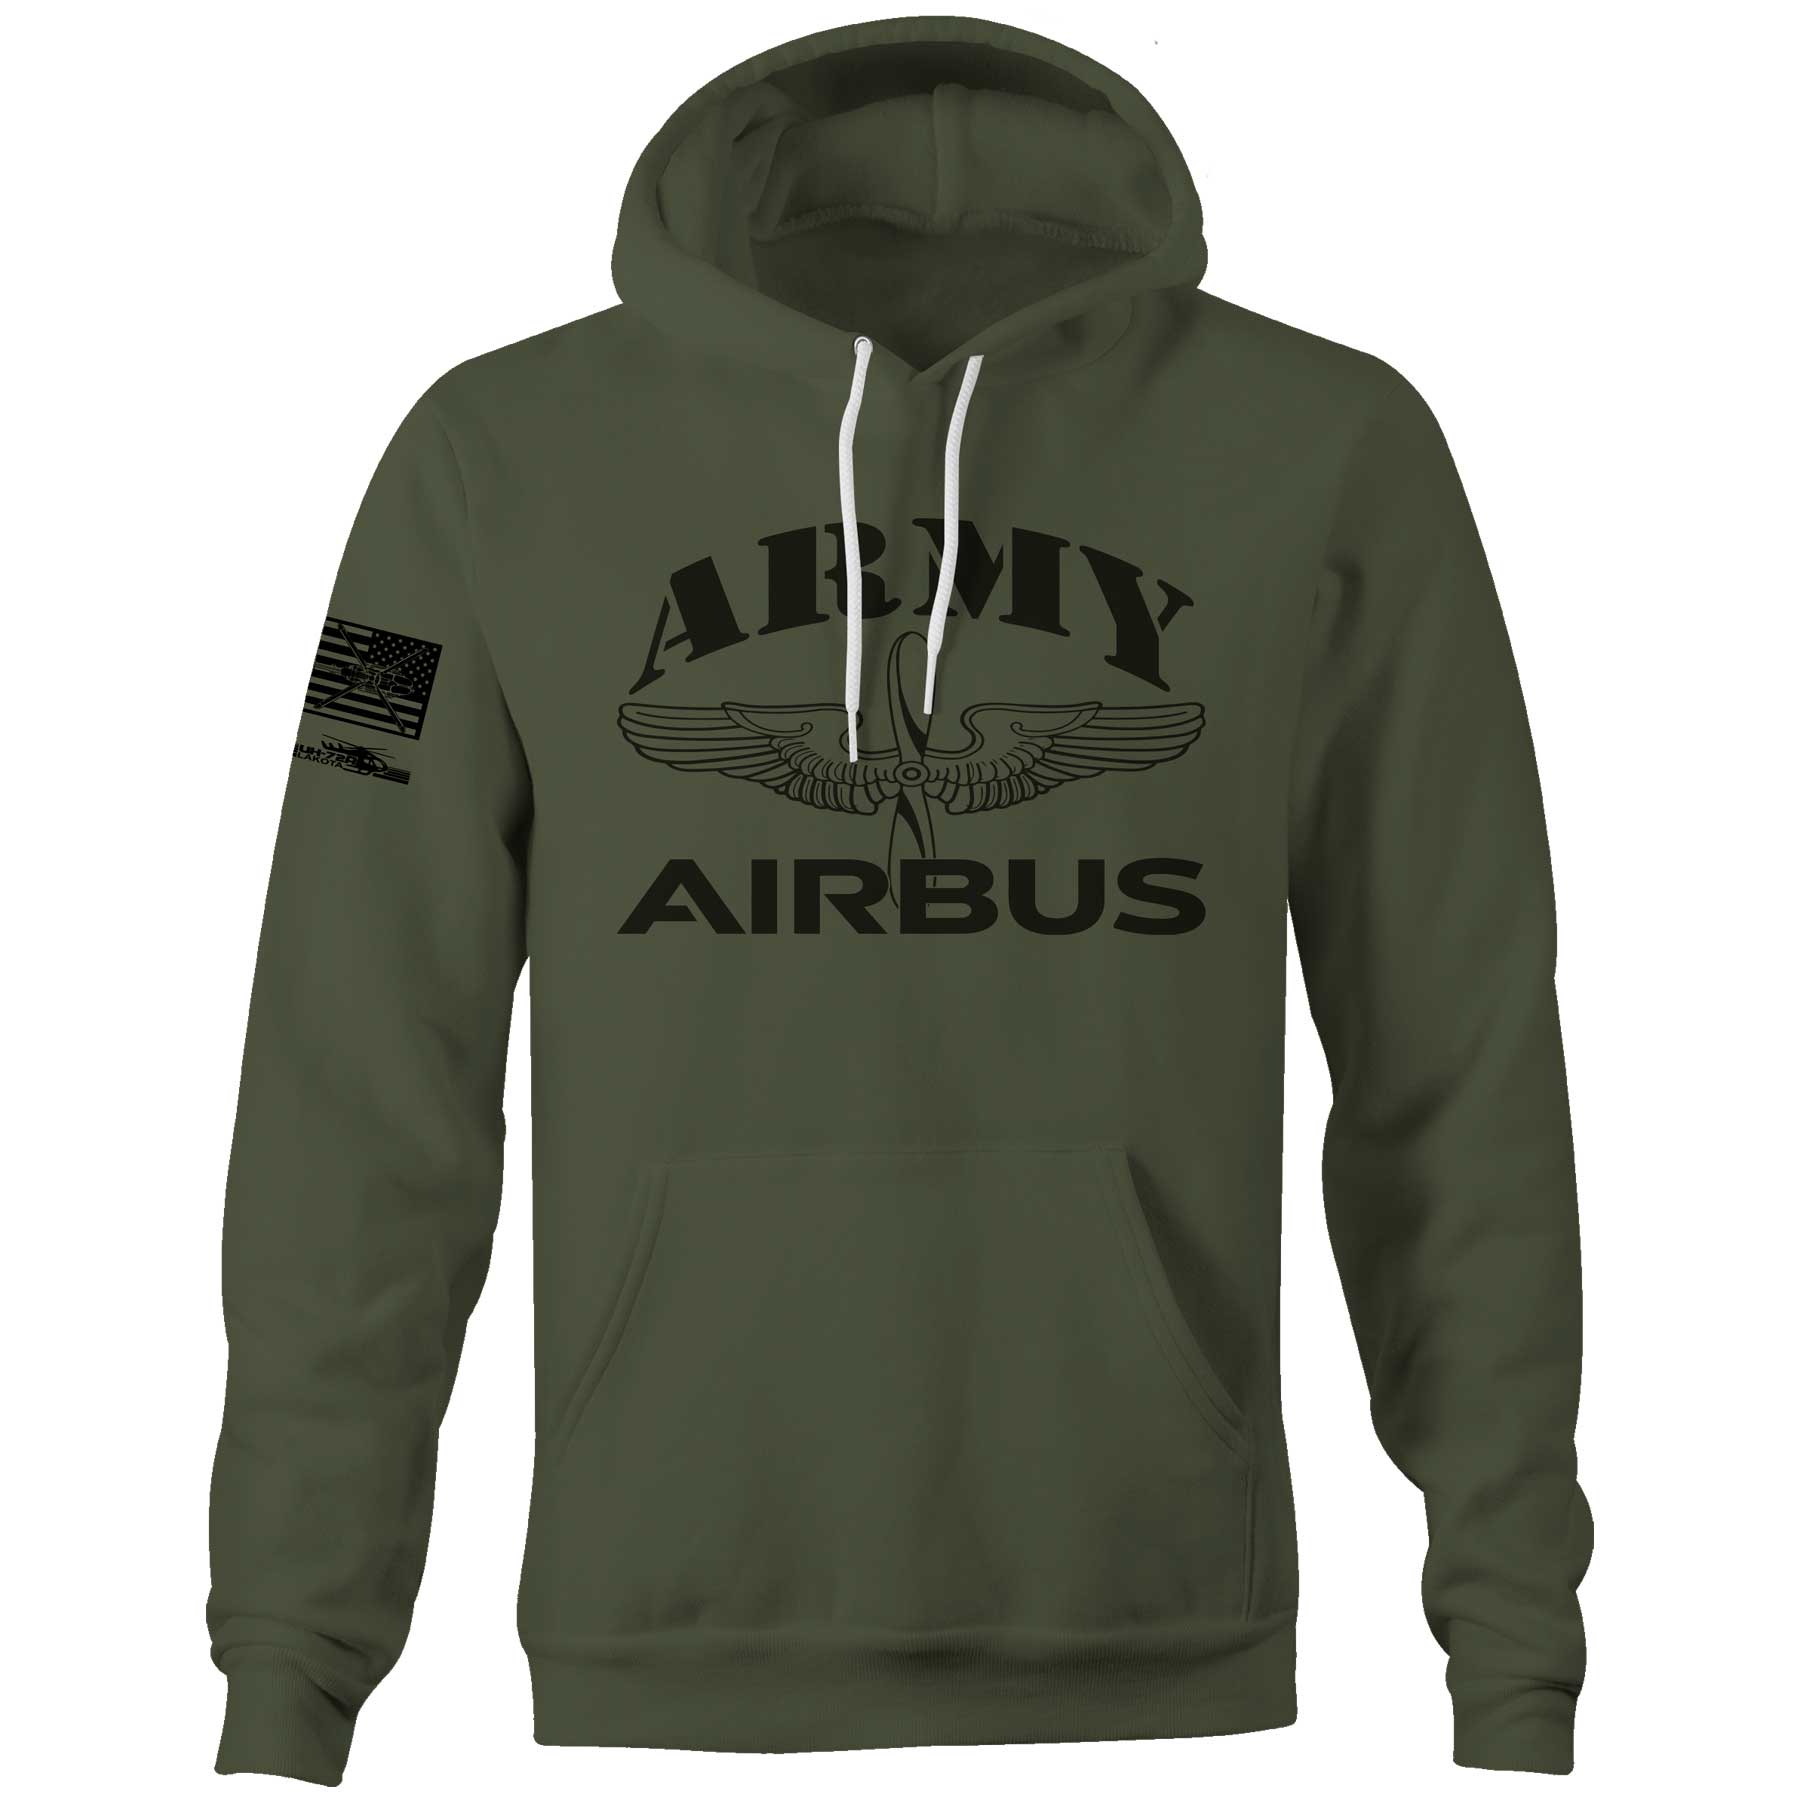 Army Airbus Unisex Hoodie